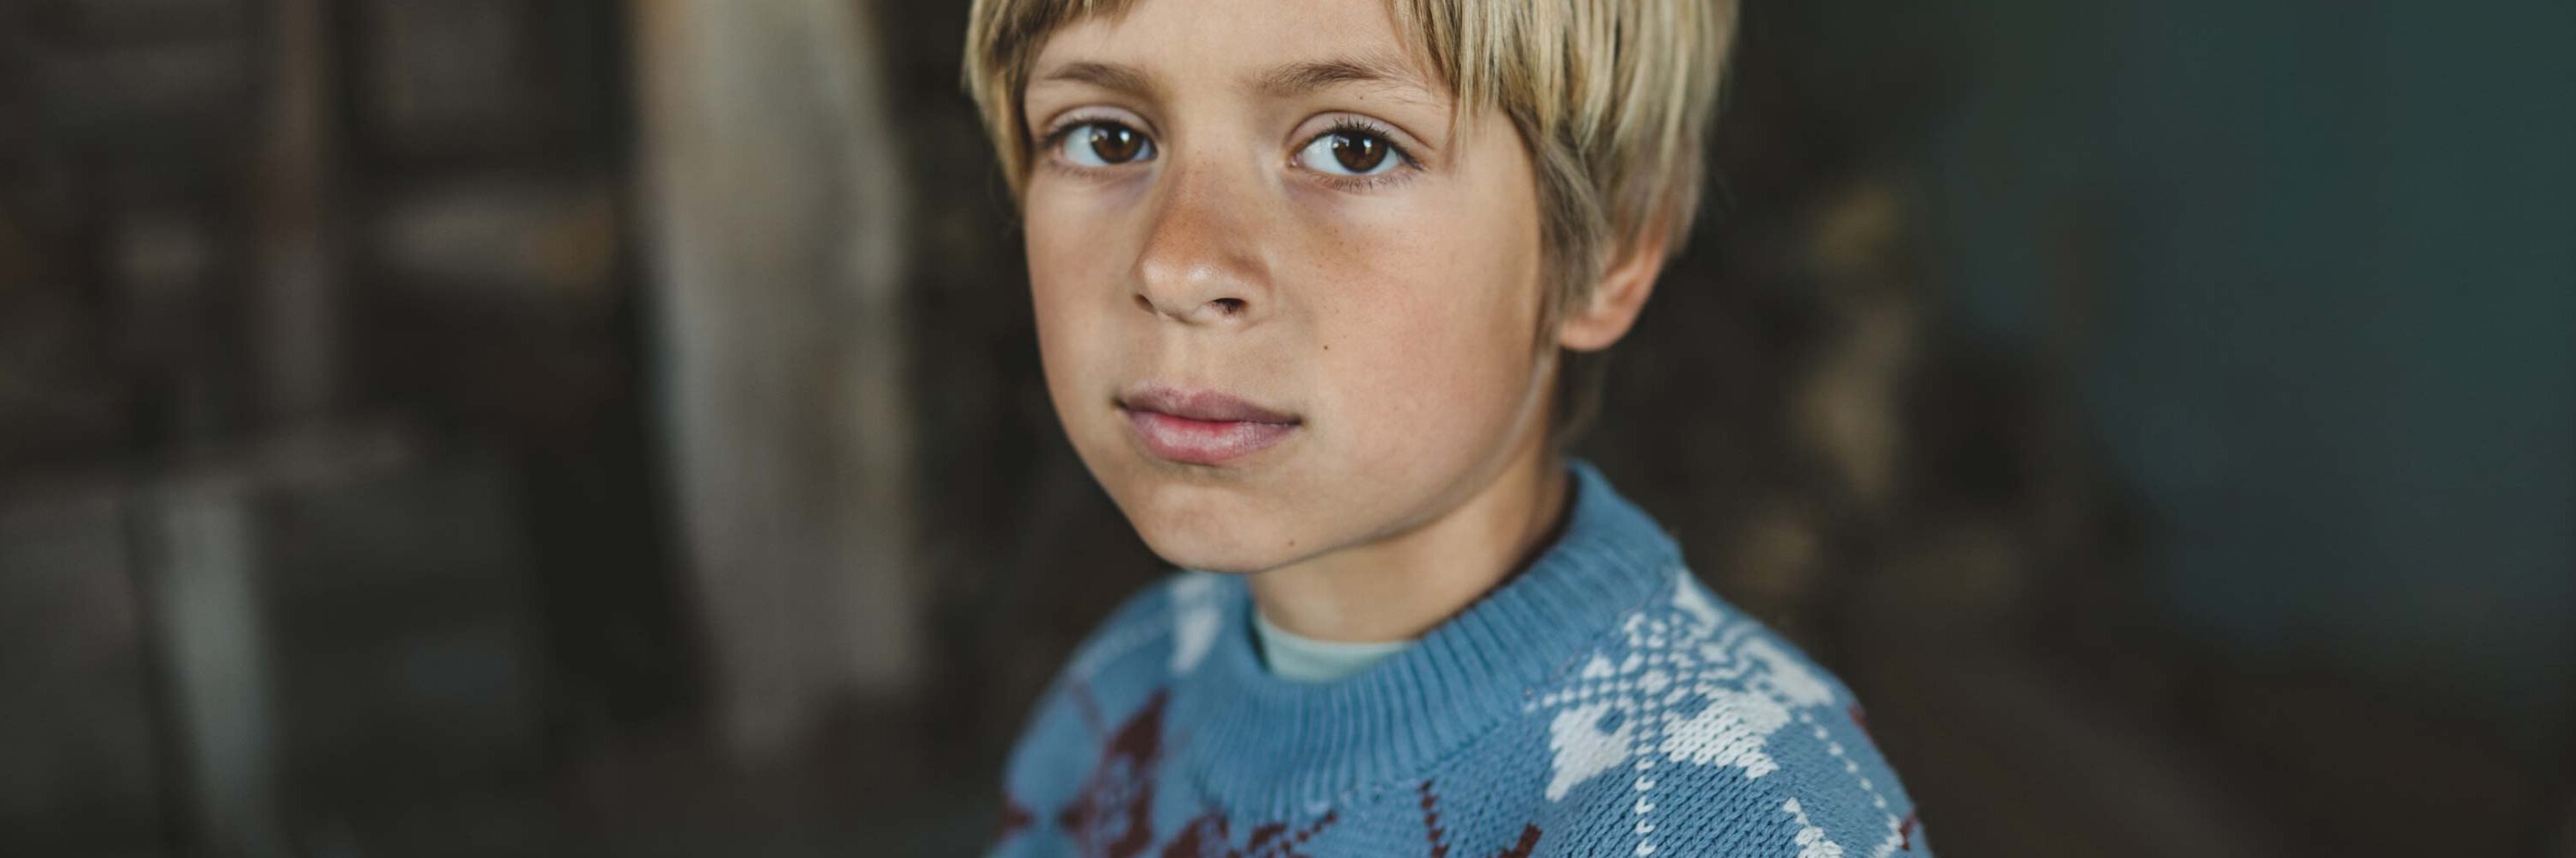 Junge in dunklem Haus in der Ukraine